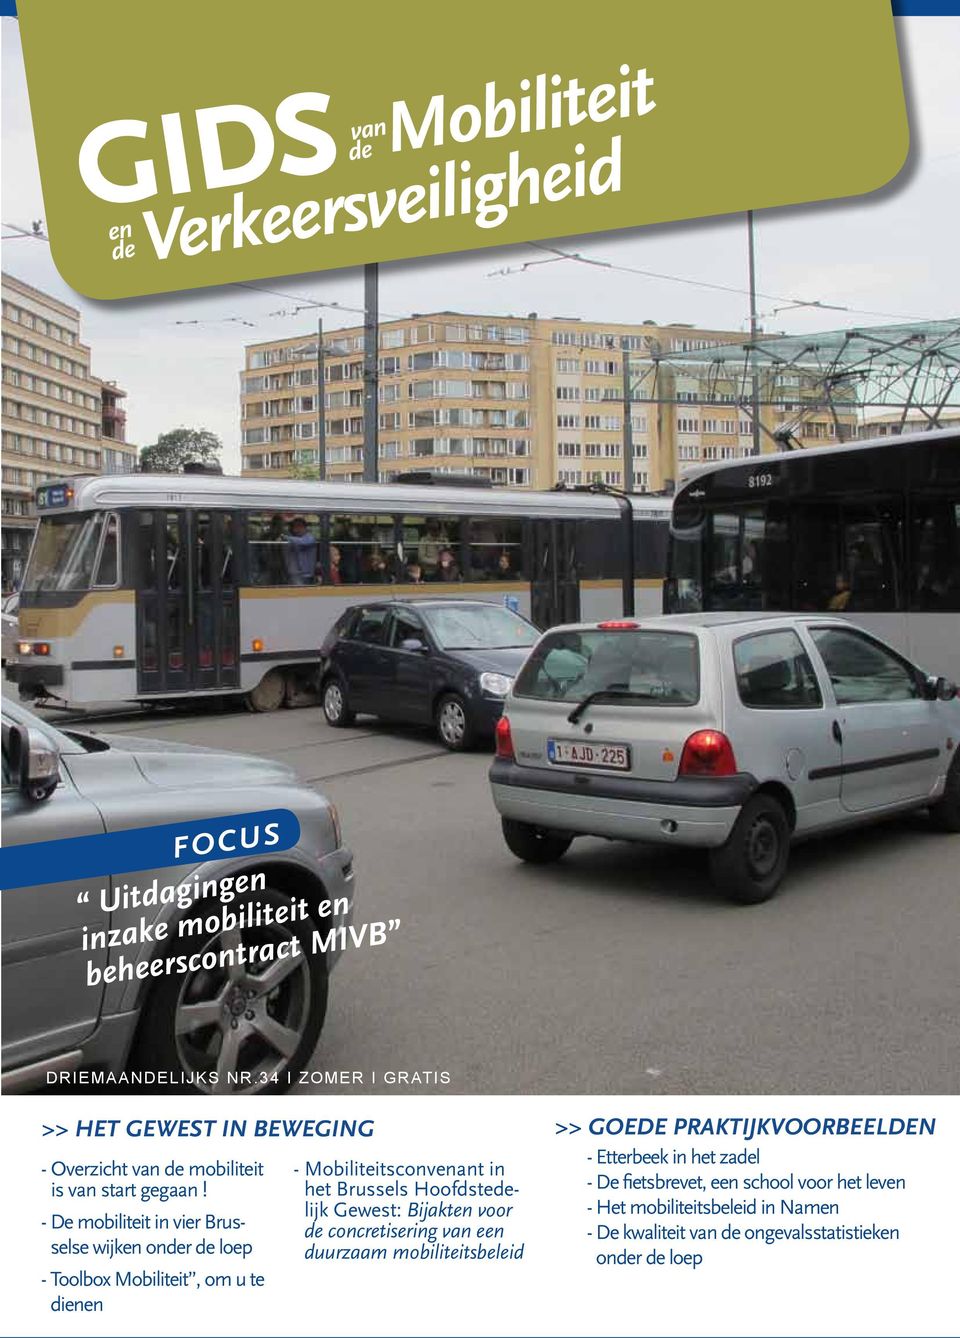 - De mobiliteit in vier Brusselse wijken onder de loep - Toolbox Mobiliteit, om u te dienen - Mobiliteitsconvenant in het Brussels Hoofdstedelijk Gewest: